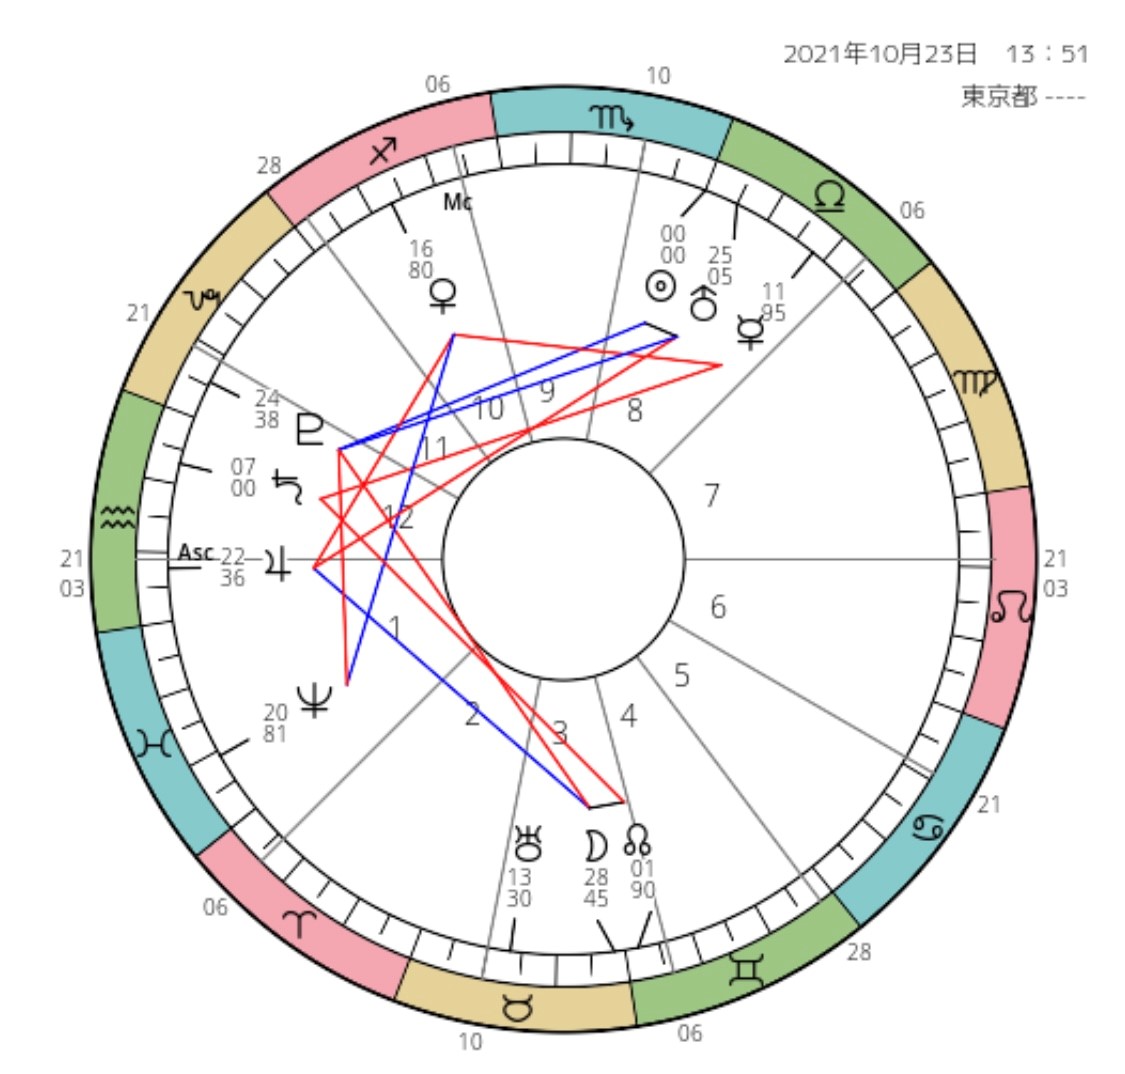 太陽☉が蠍座♏に移動【一か月のテーマ・過ごし方のポイント】2021年版